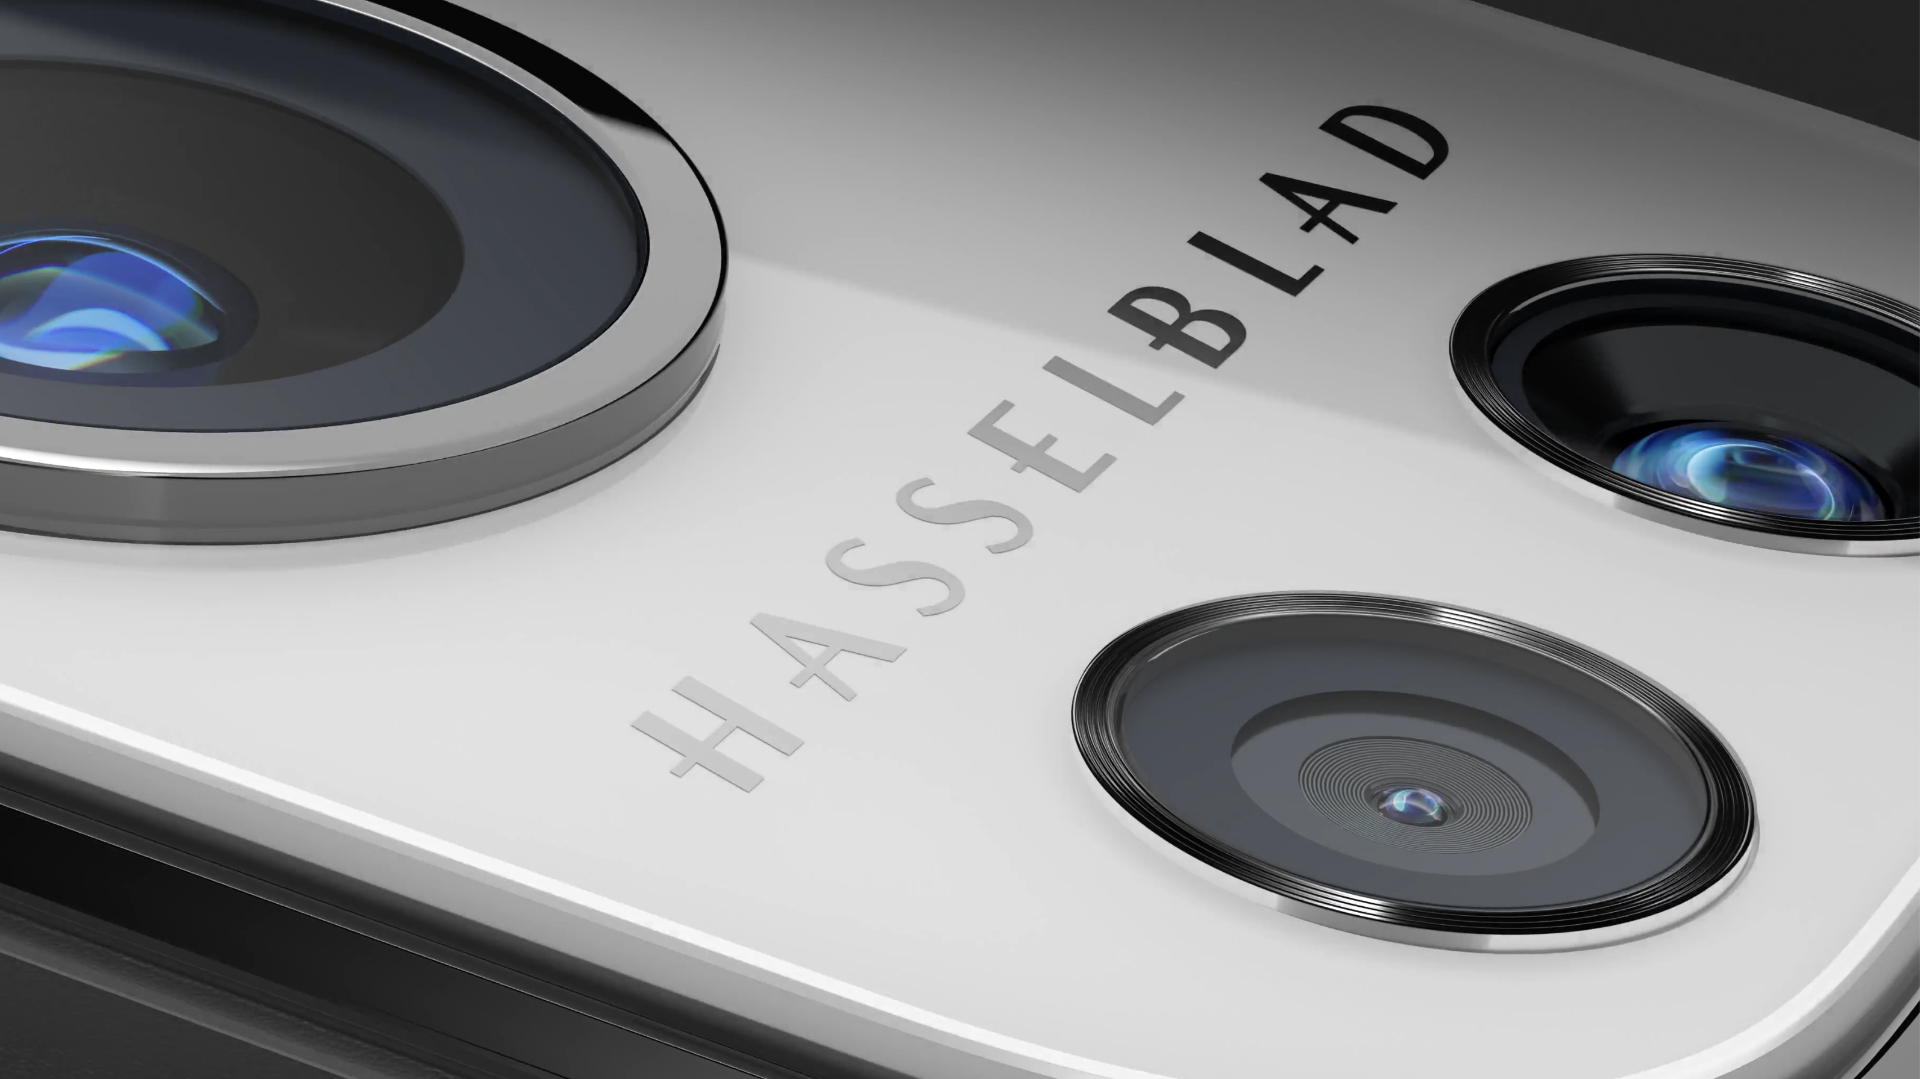 Es realmente una cámara Hasselblad o Leica? Acerca de las cámaras de marca los smartphones | CineD